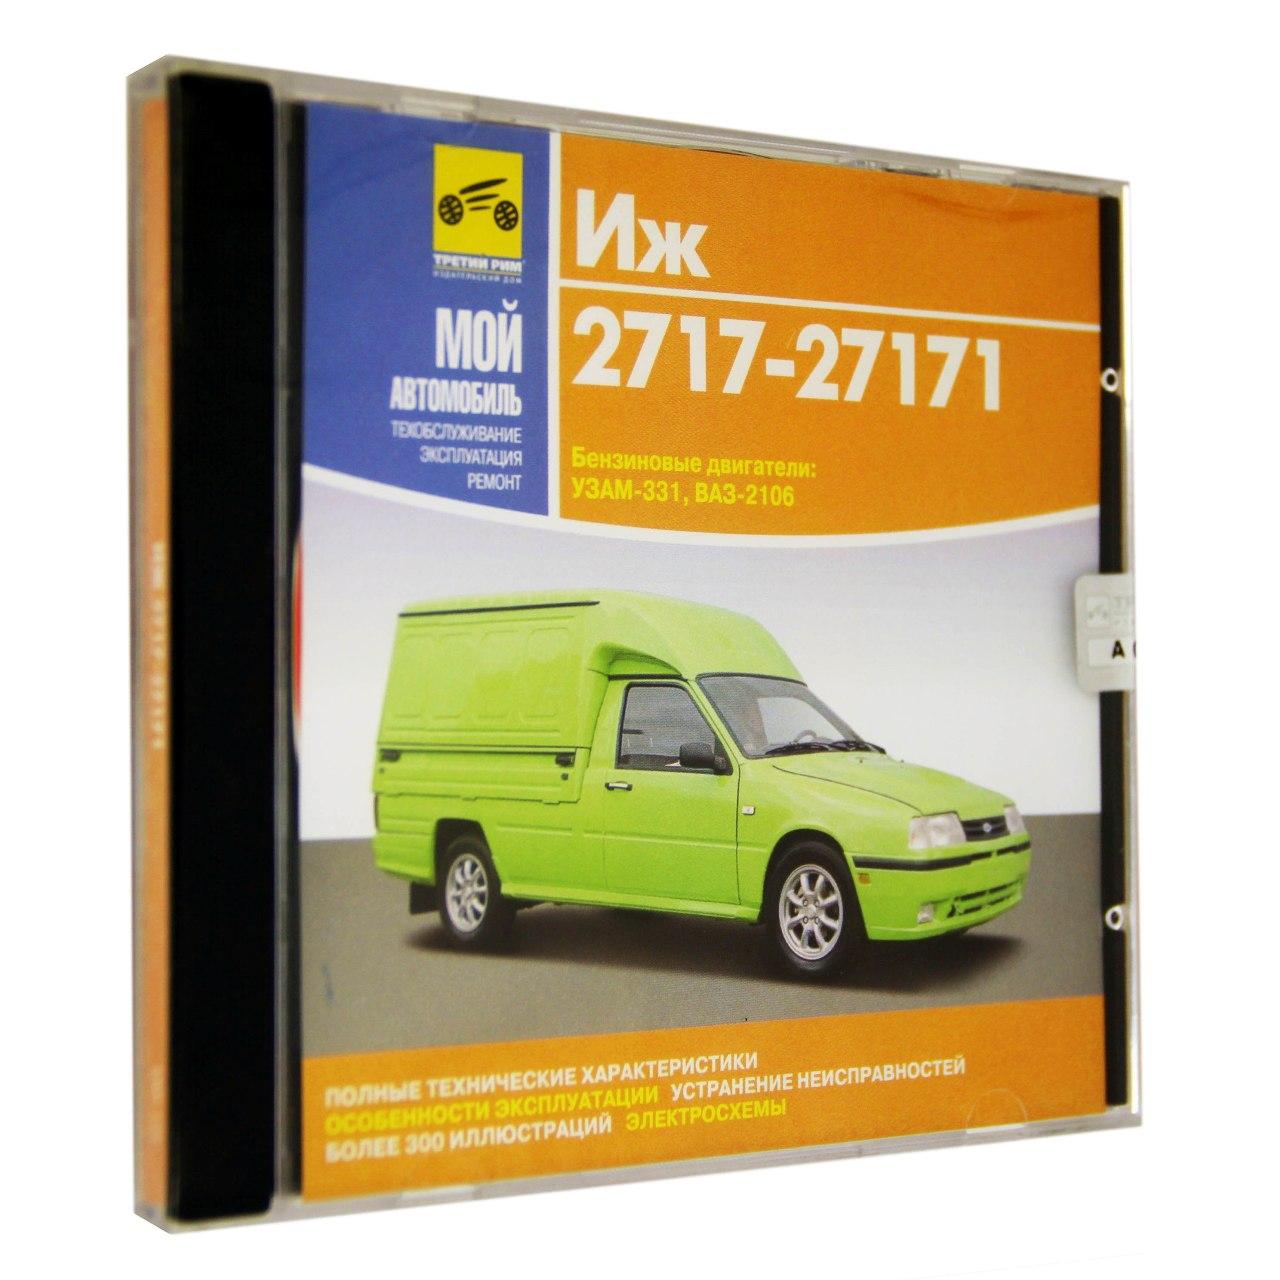 Компьютерный компакт-диск ИЖ 2717-27171. ’Мой автомобиль’. (ПК), фирма "Медиа Ворлд", 1CD